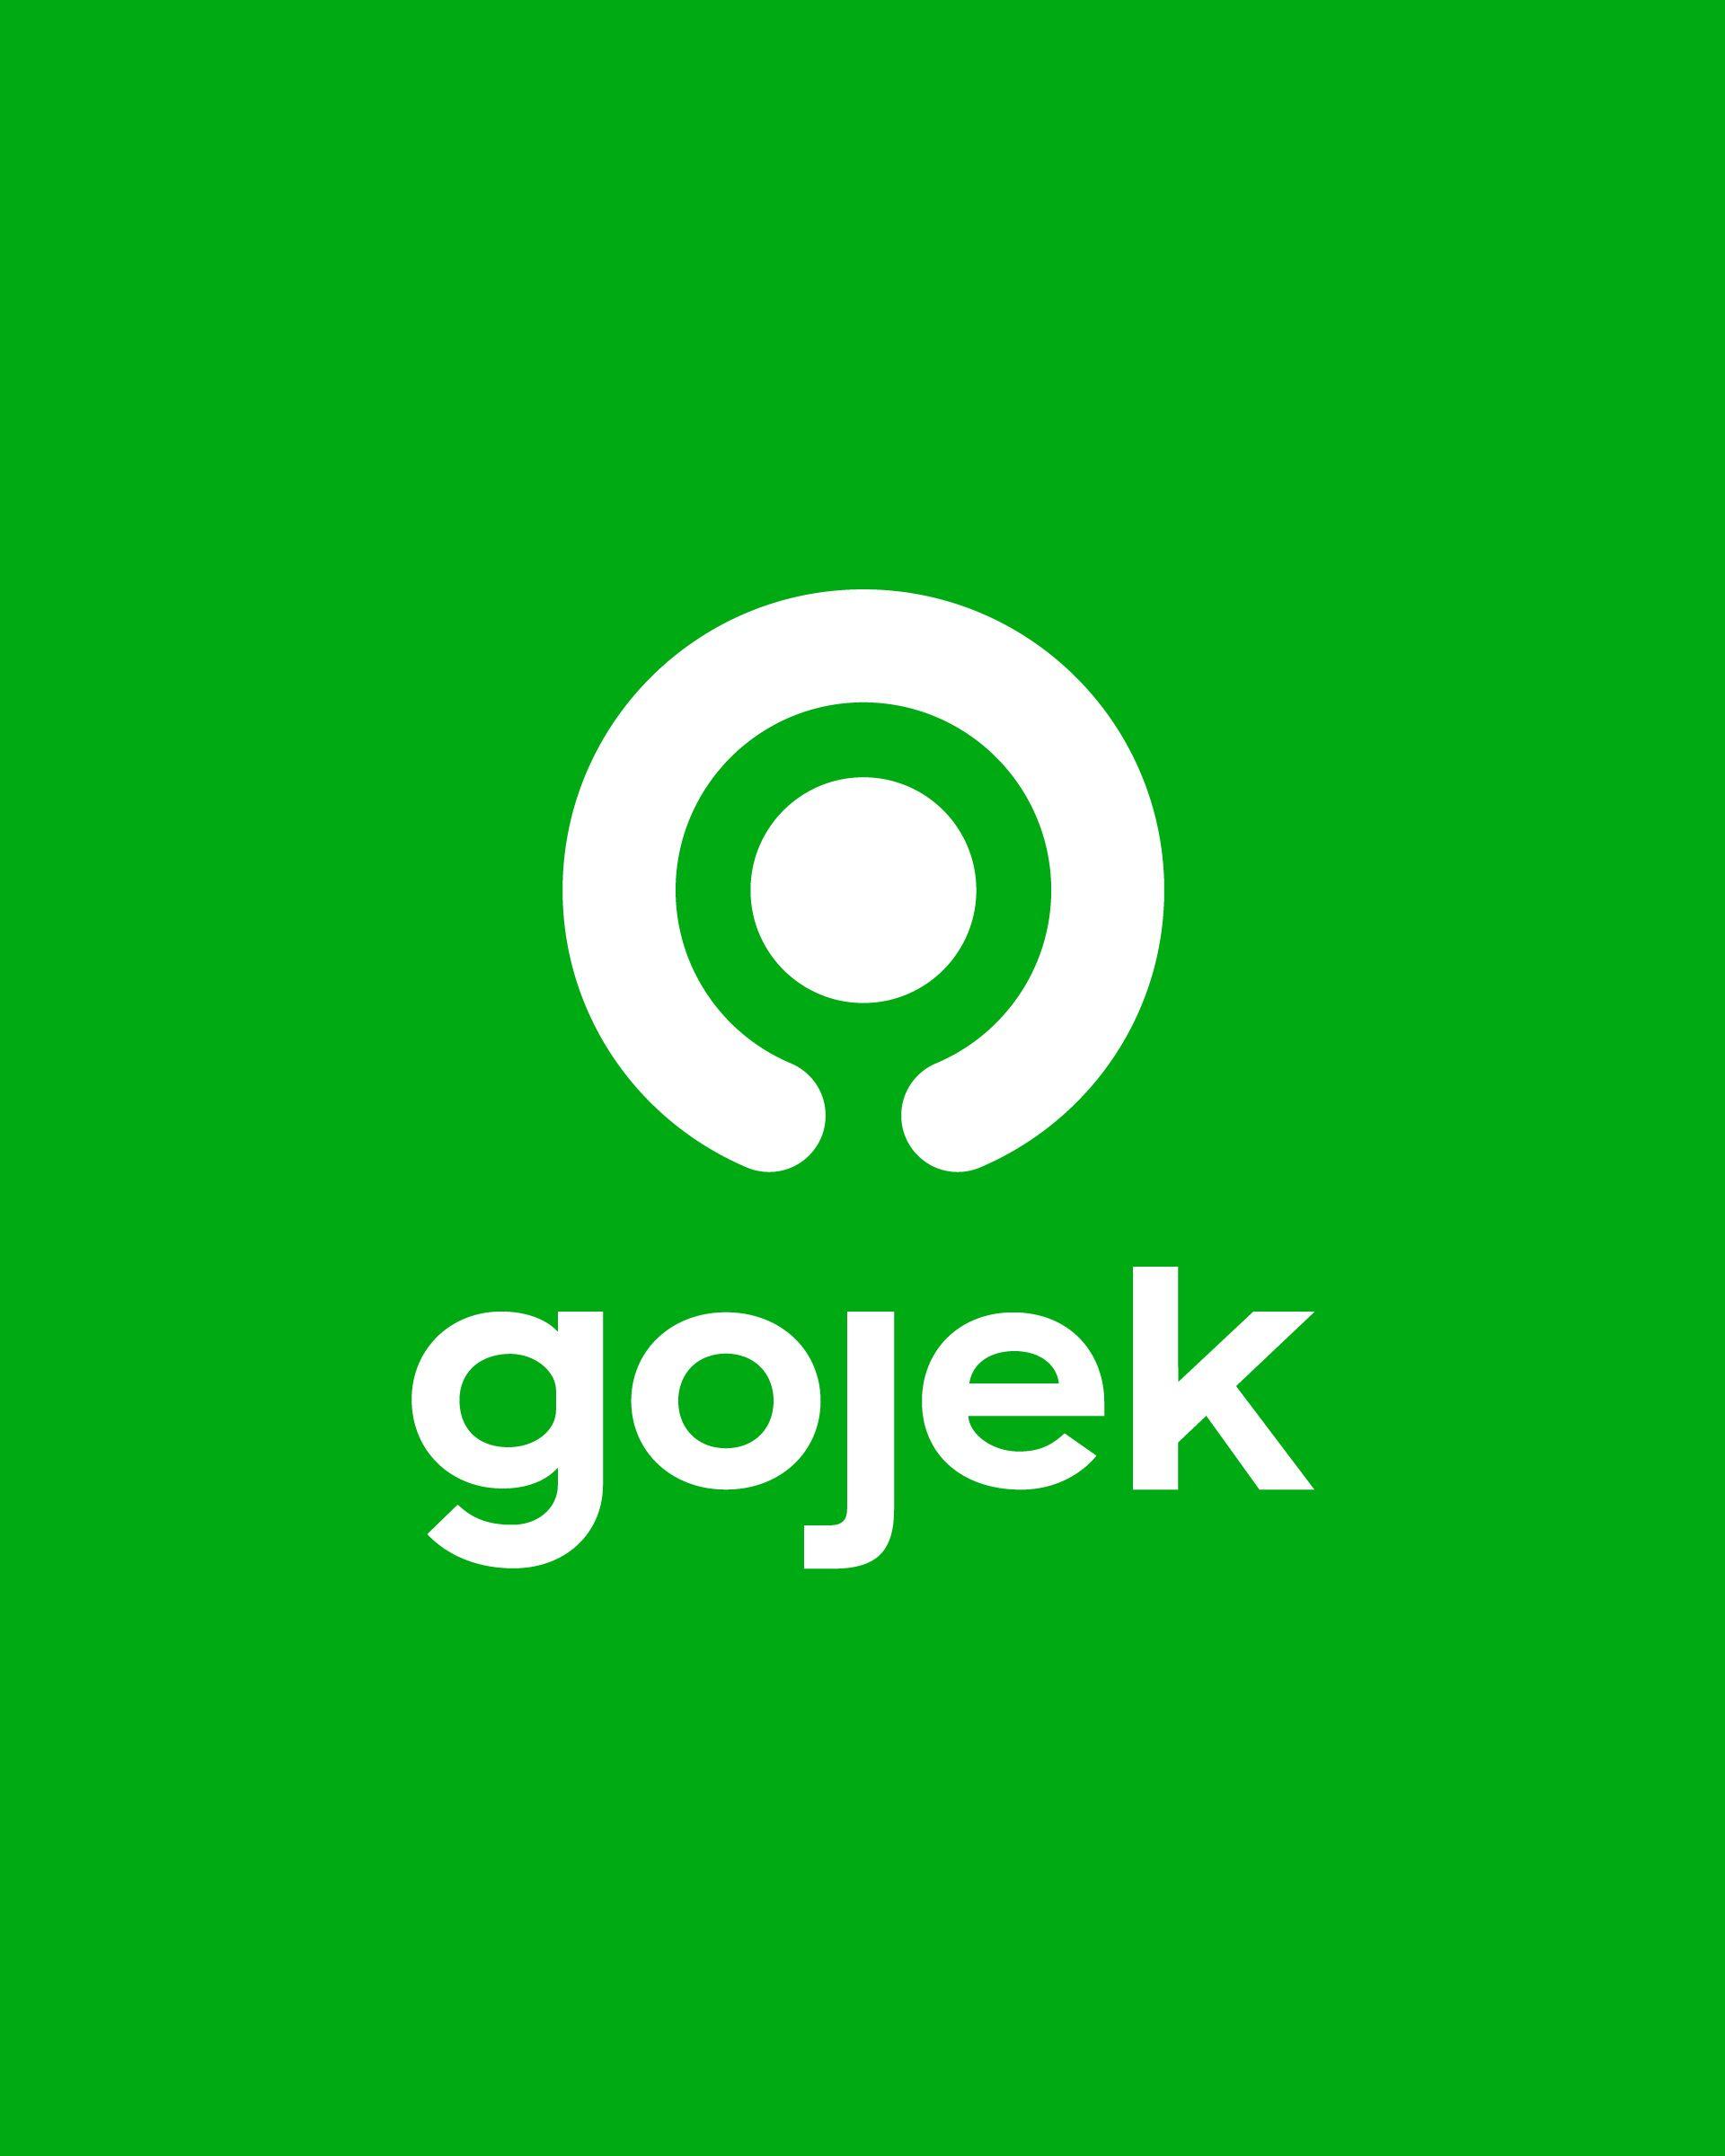 Gojek Logo - Gojek Vietnam | About